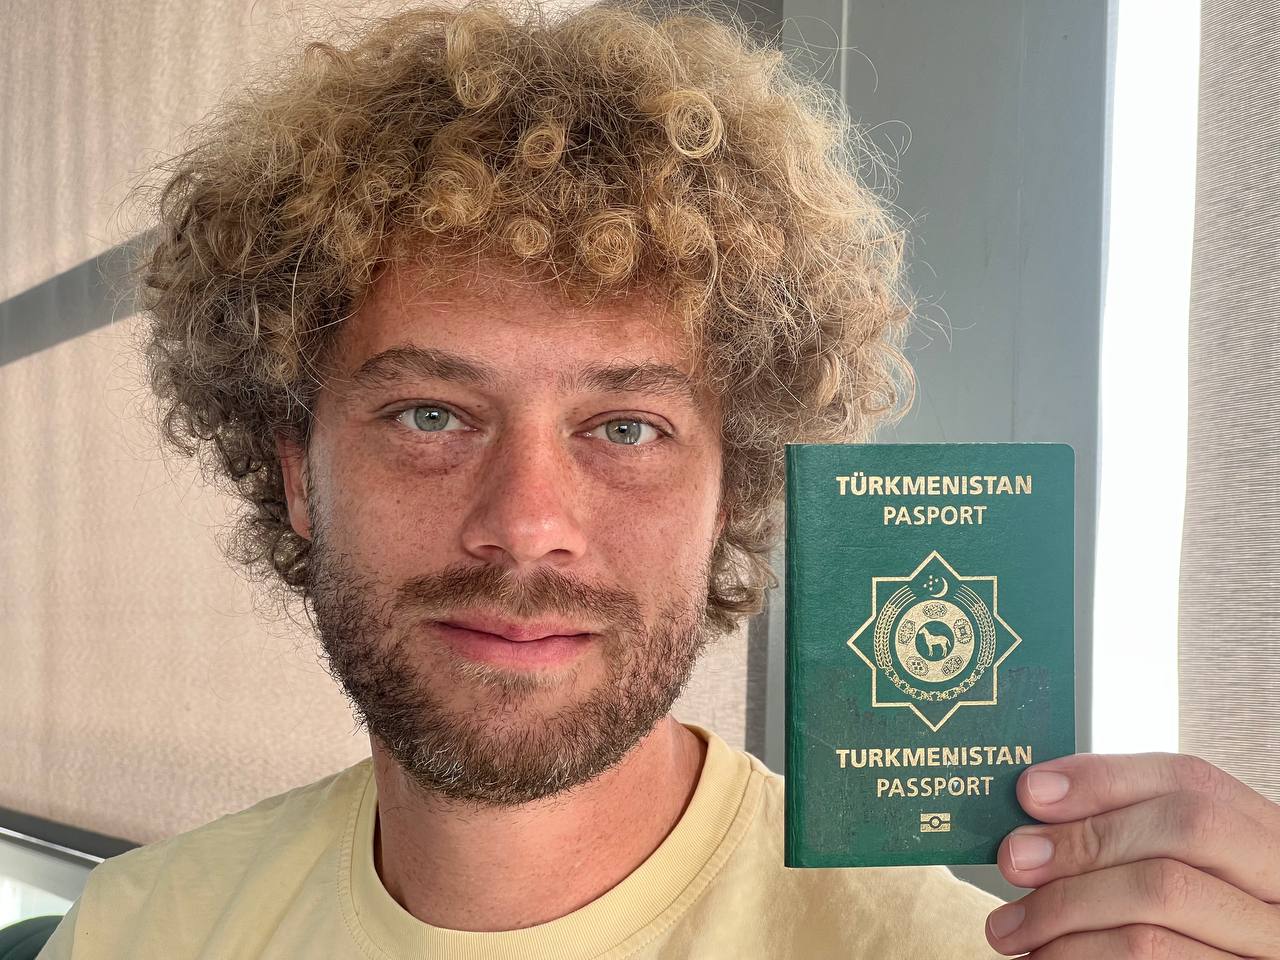 «Смотрите и завидуйте» — блогер Илья Варламов объявил о получении гражданства Туркменистана